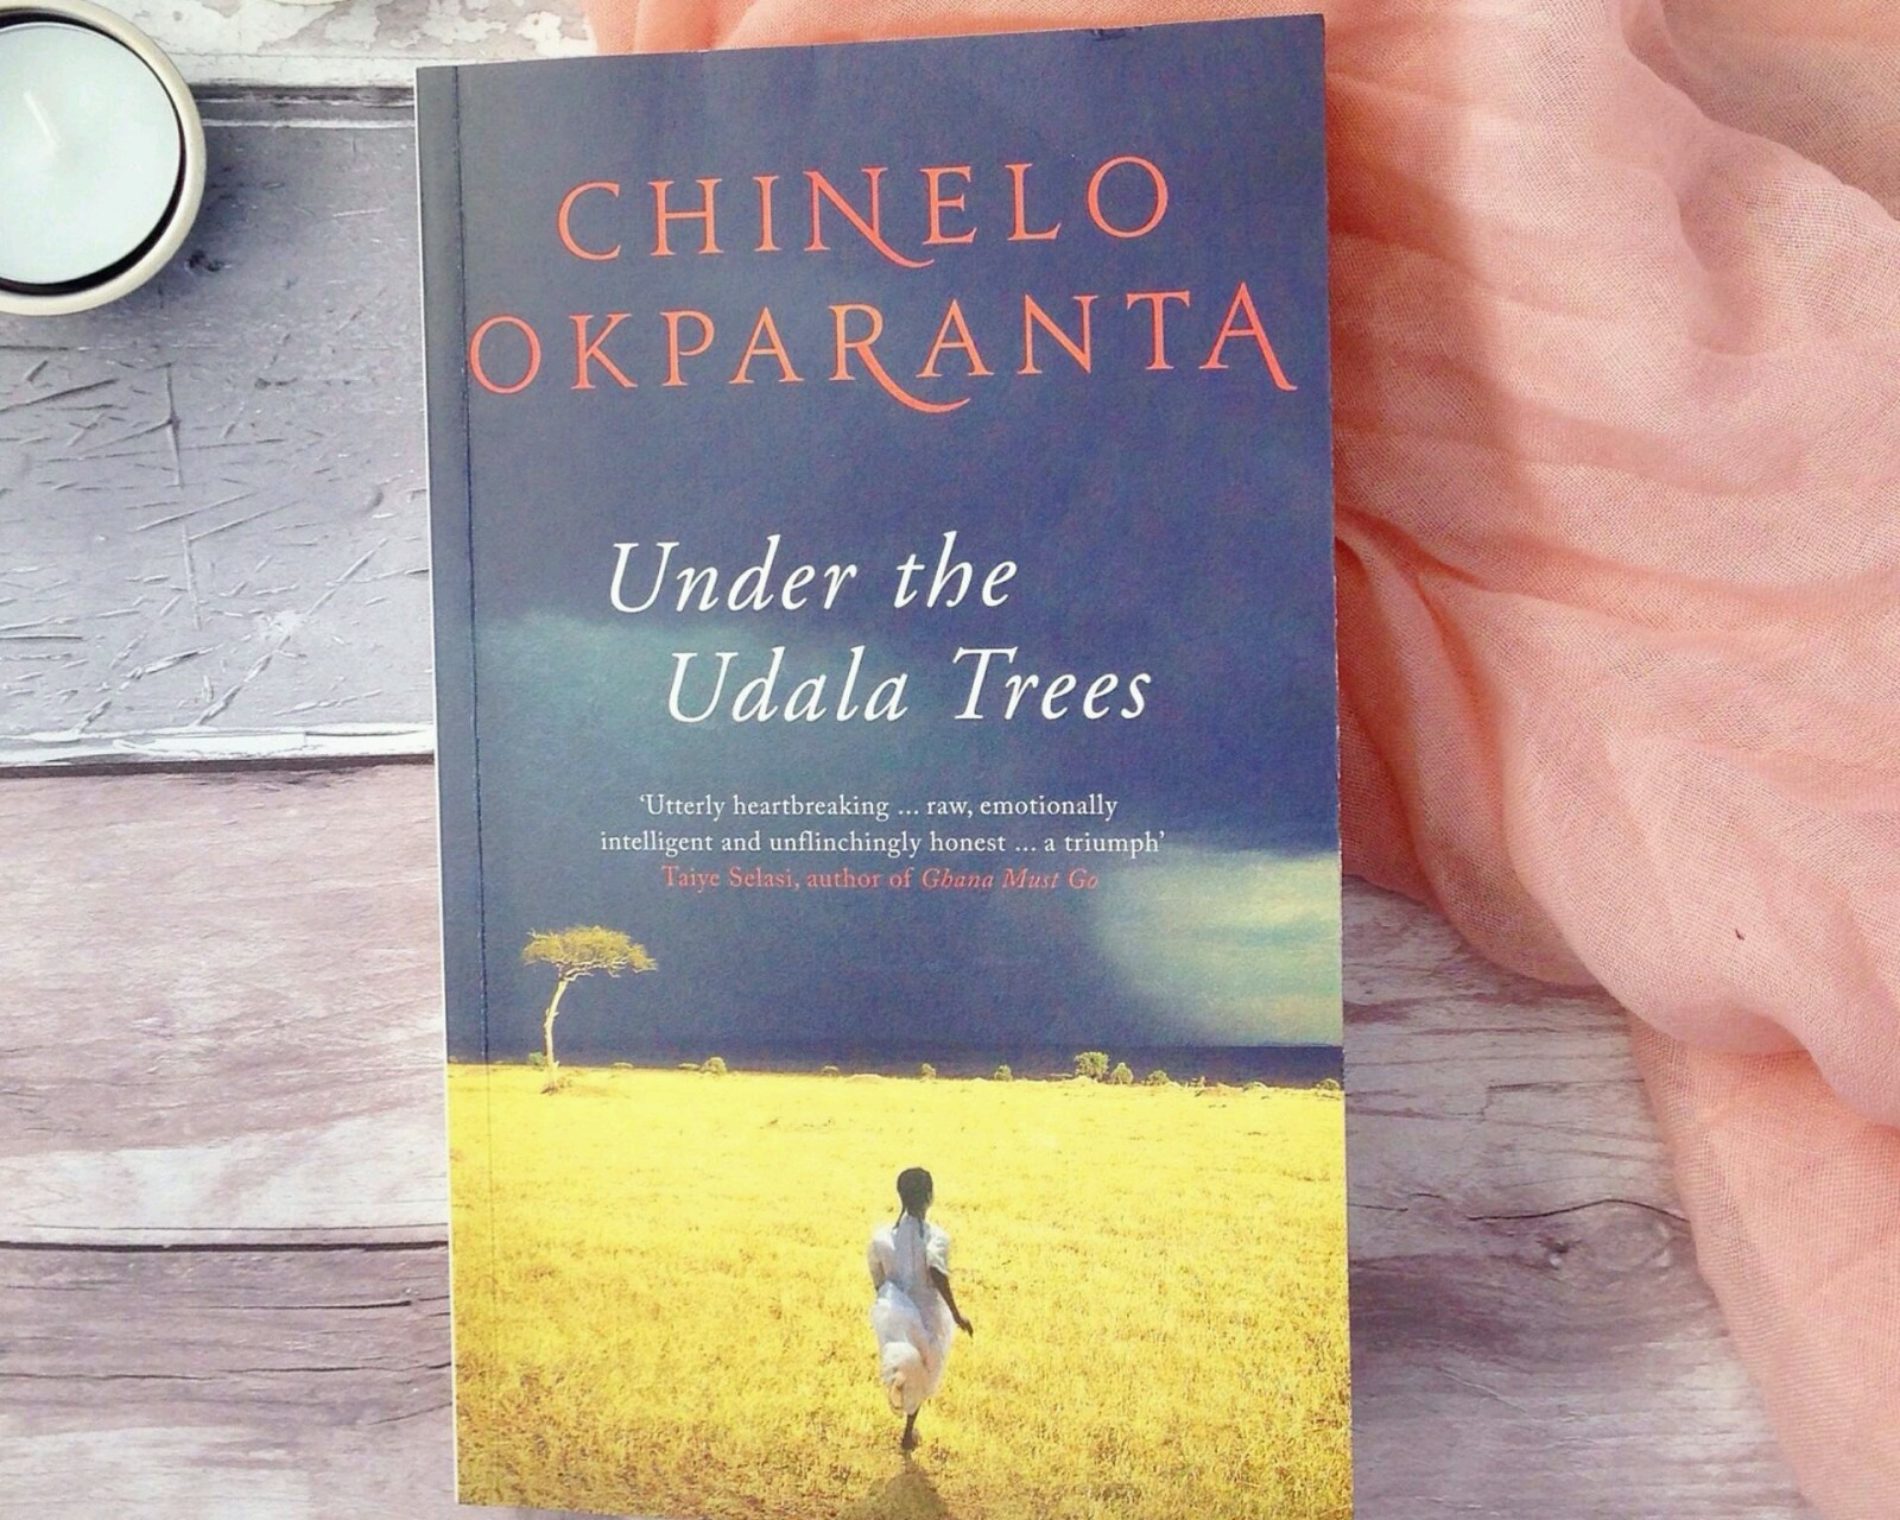 A Prayer From Chinelo Okparanta’s ‘Under The Udala Trees’